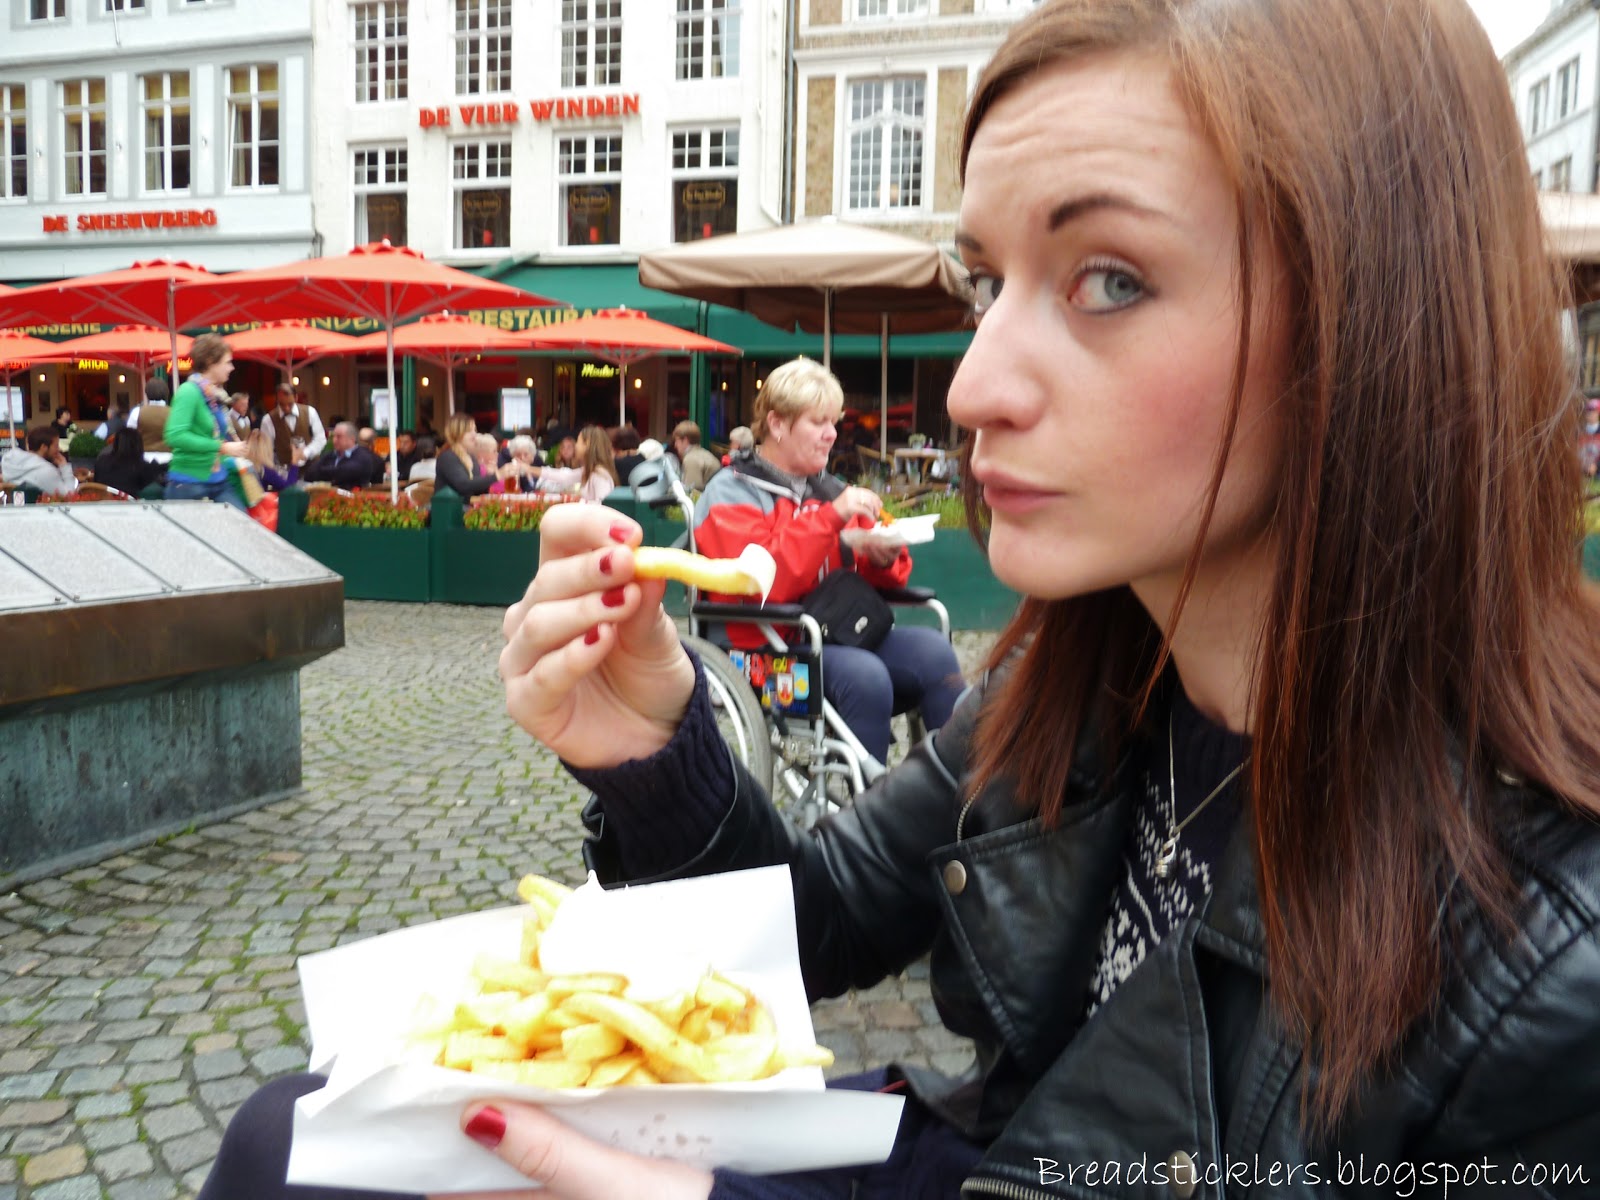 Breadsticklers - A Leeds Food Blog: Bruges Food - featuring De Hobbit